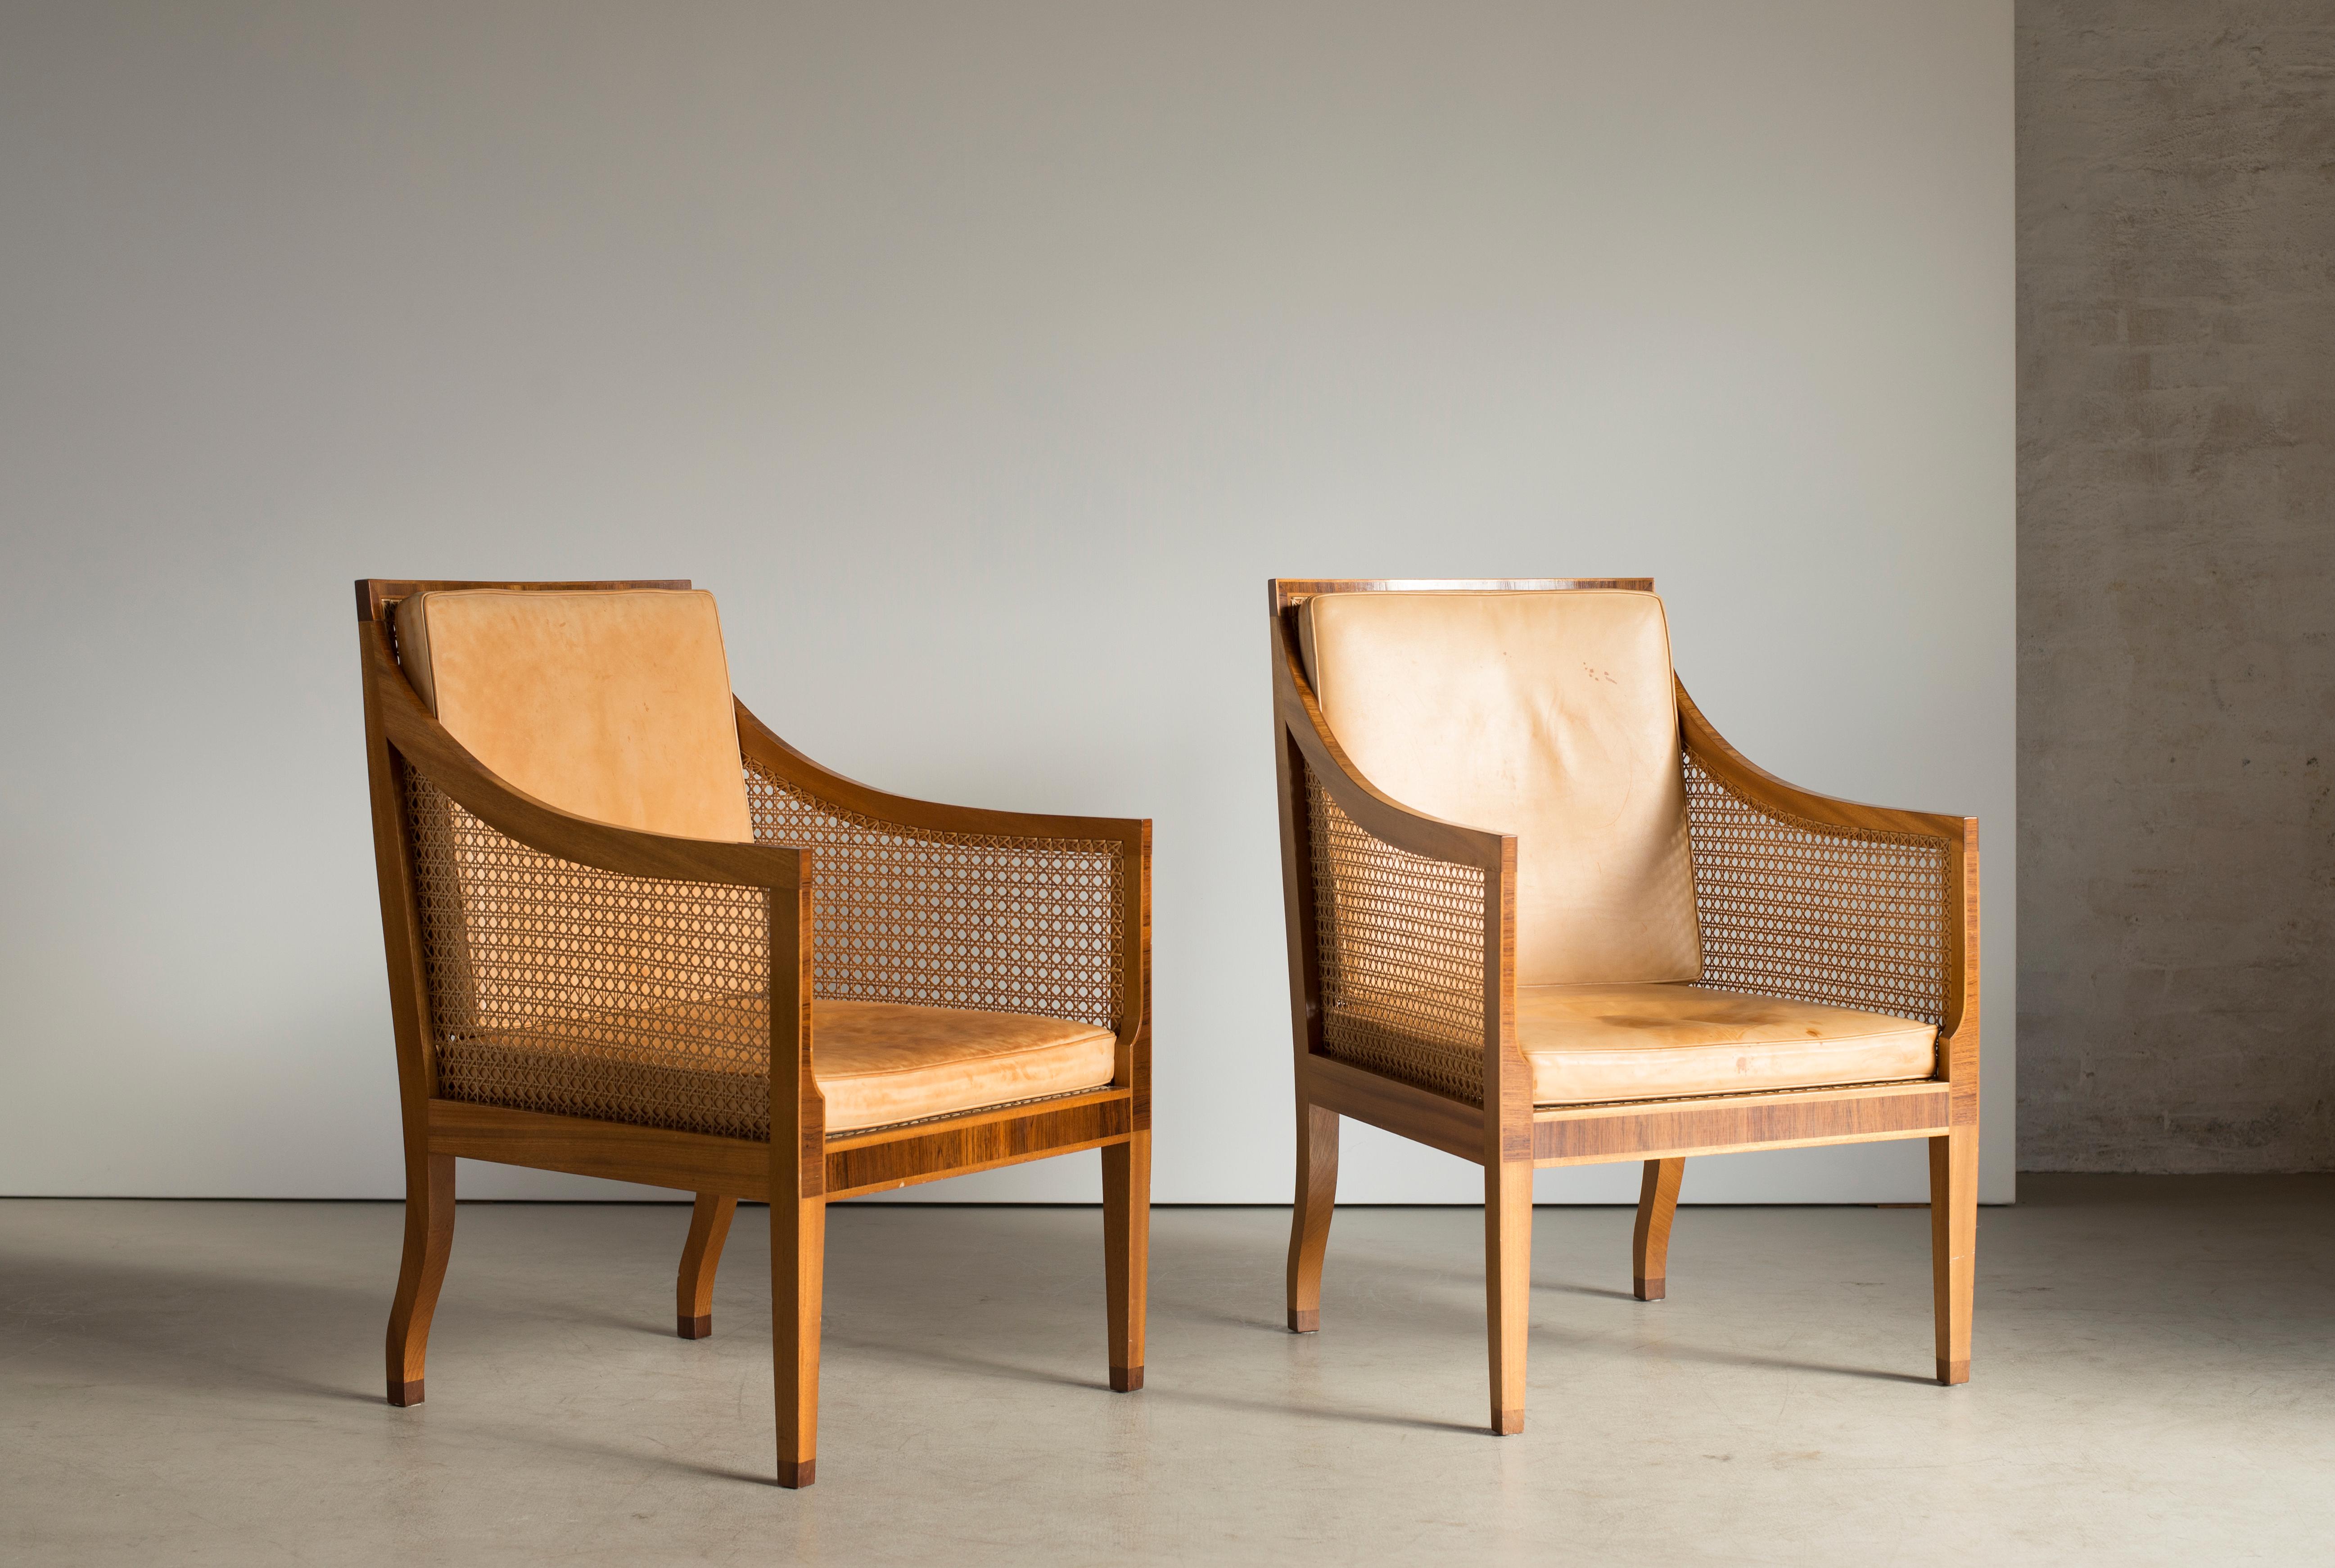 Kaare Klint Pair of Bergere chairs in Mahogany. Executed by Rud. Rasmussen.

Reverse with paper labels ‘RUD. RASMUSSENS/SNEDKERIER/KØBENHAVN/DENMARK.